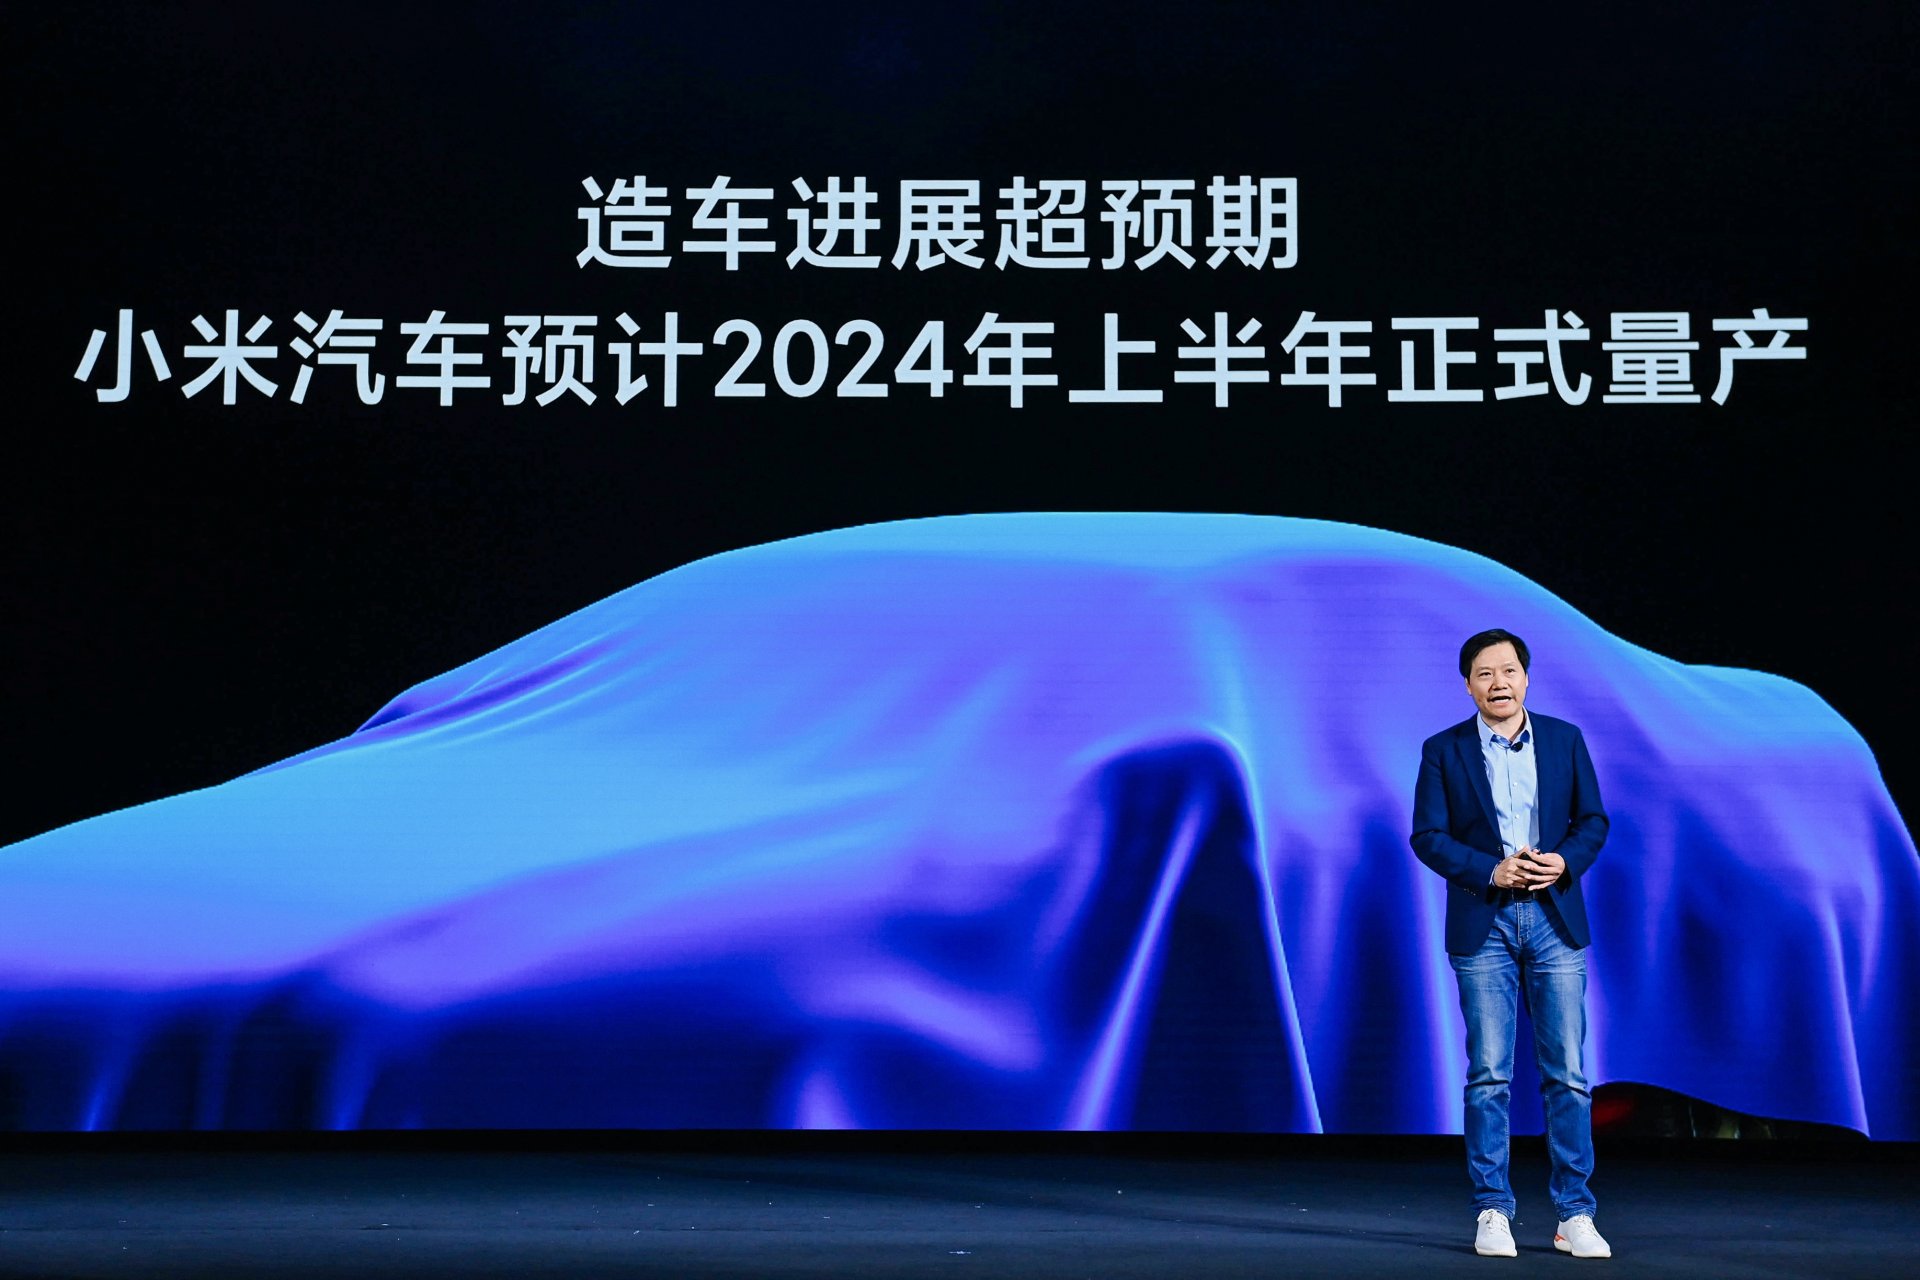 Berita, teaser mobil xiaomi: Xiaomi Ungkap Konsep Mobilnya di Agustus 2022, Buat Kaum Mending Nih!